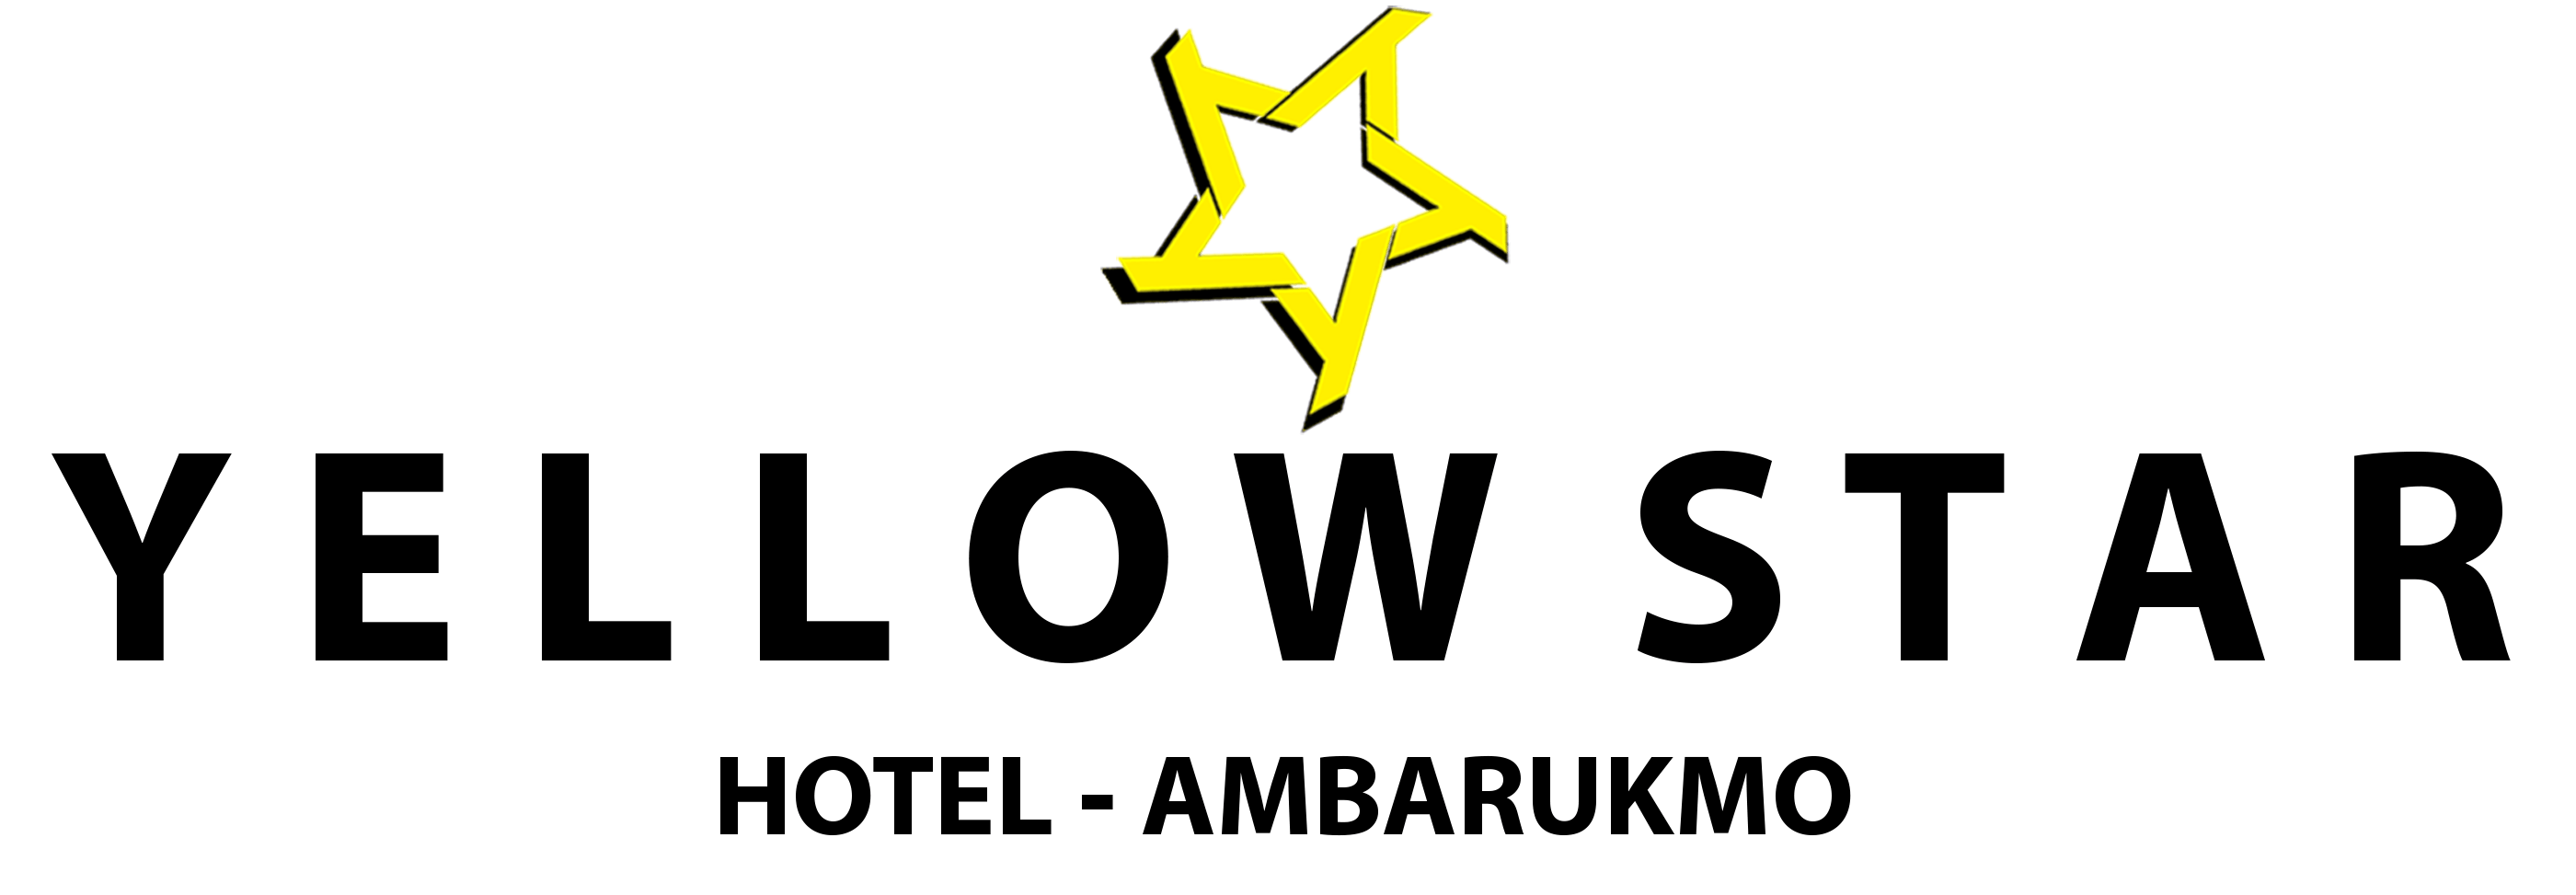 Yellow Star Logo - Yellow Star Hotel - Yogyakarta